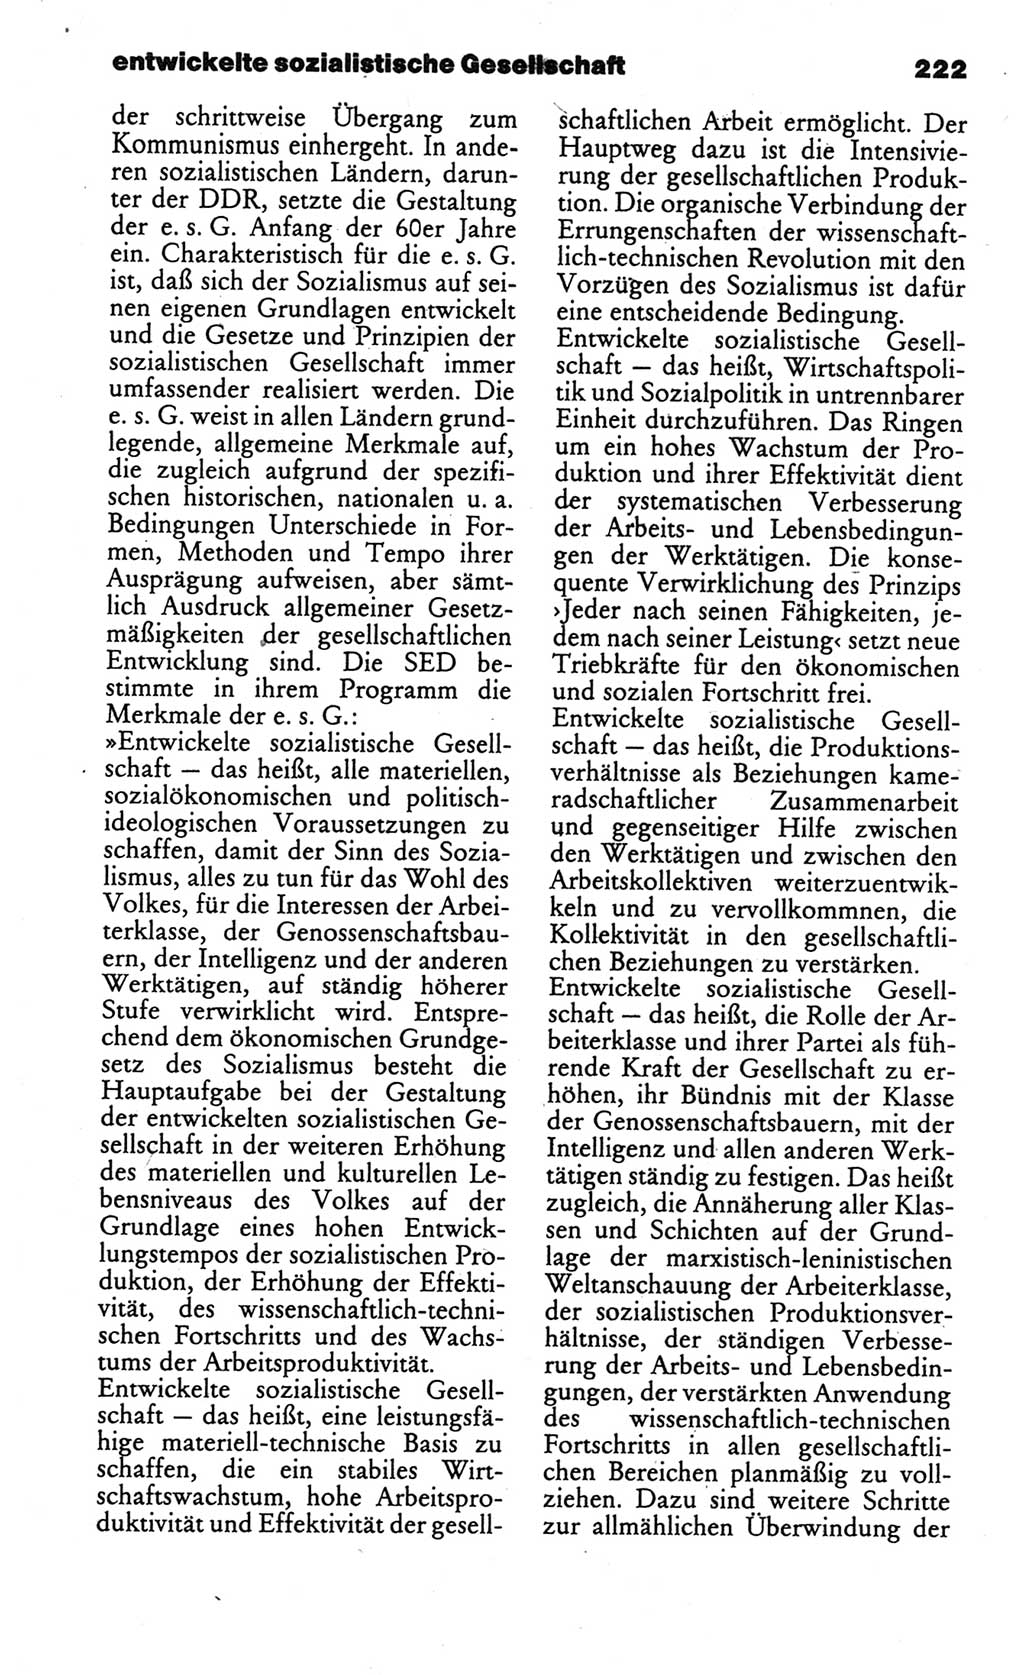 Kleines politisches Wörterbuch [Deutsche Demokratische Republik (DDR)] 1986, Seite 222 (Kl. pol. Wb. DDR 1986, S. 222)